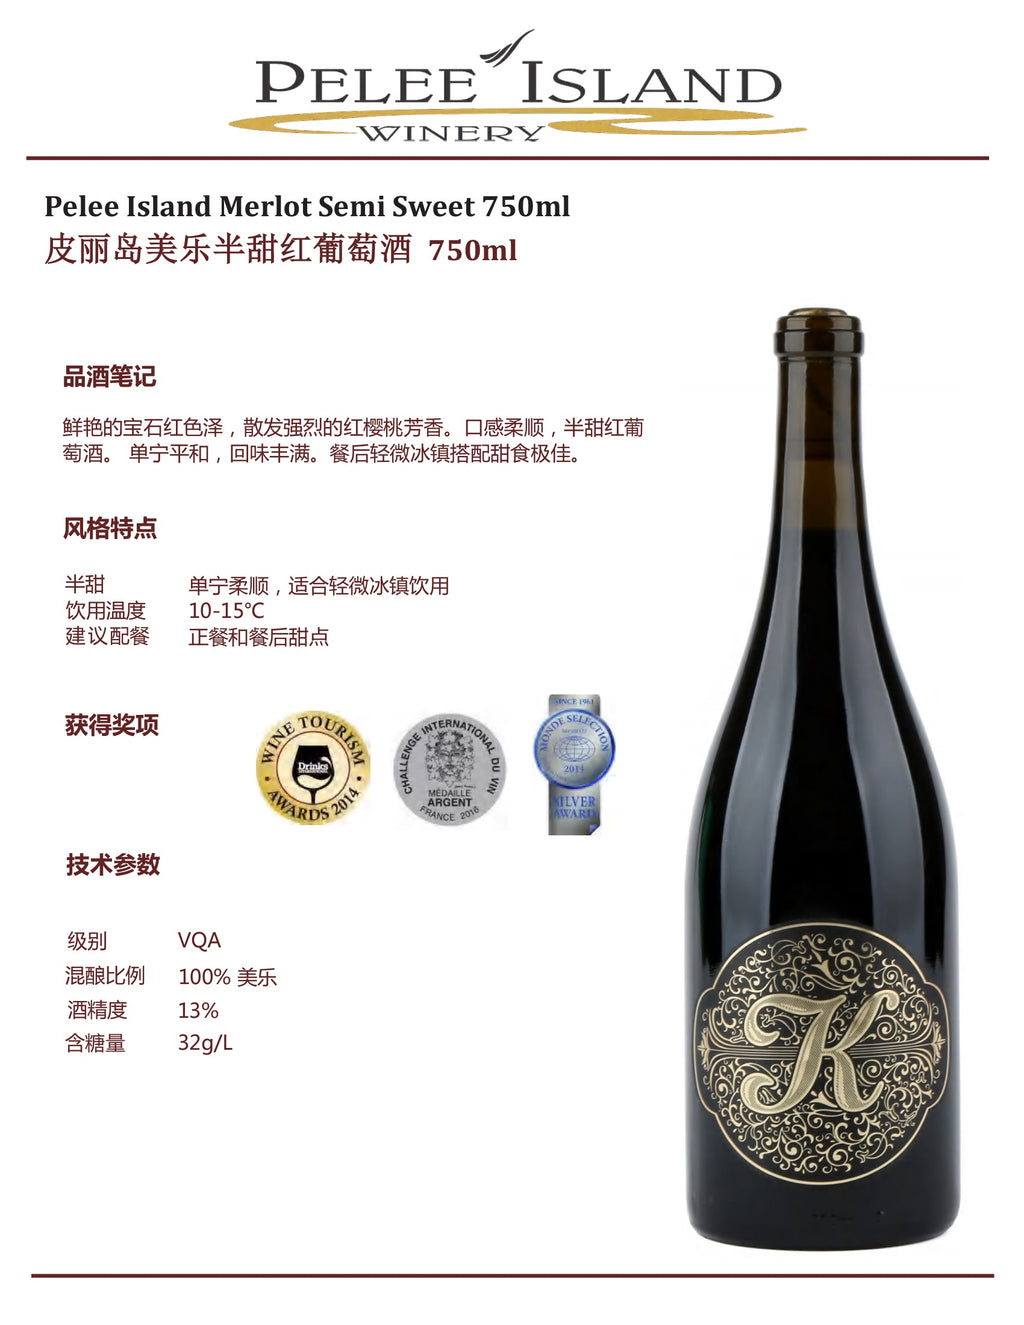 中国邮寄:酒:加拿大Pelee Island酒庄:皮丽岛美乐甜红葡萄酒750毫升/ Pelee Island Merlot Semi Sweet 750ml